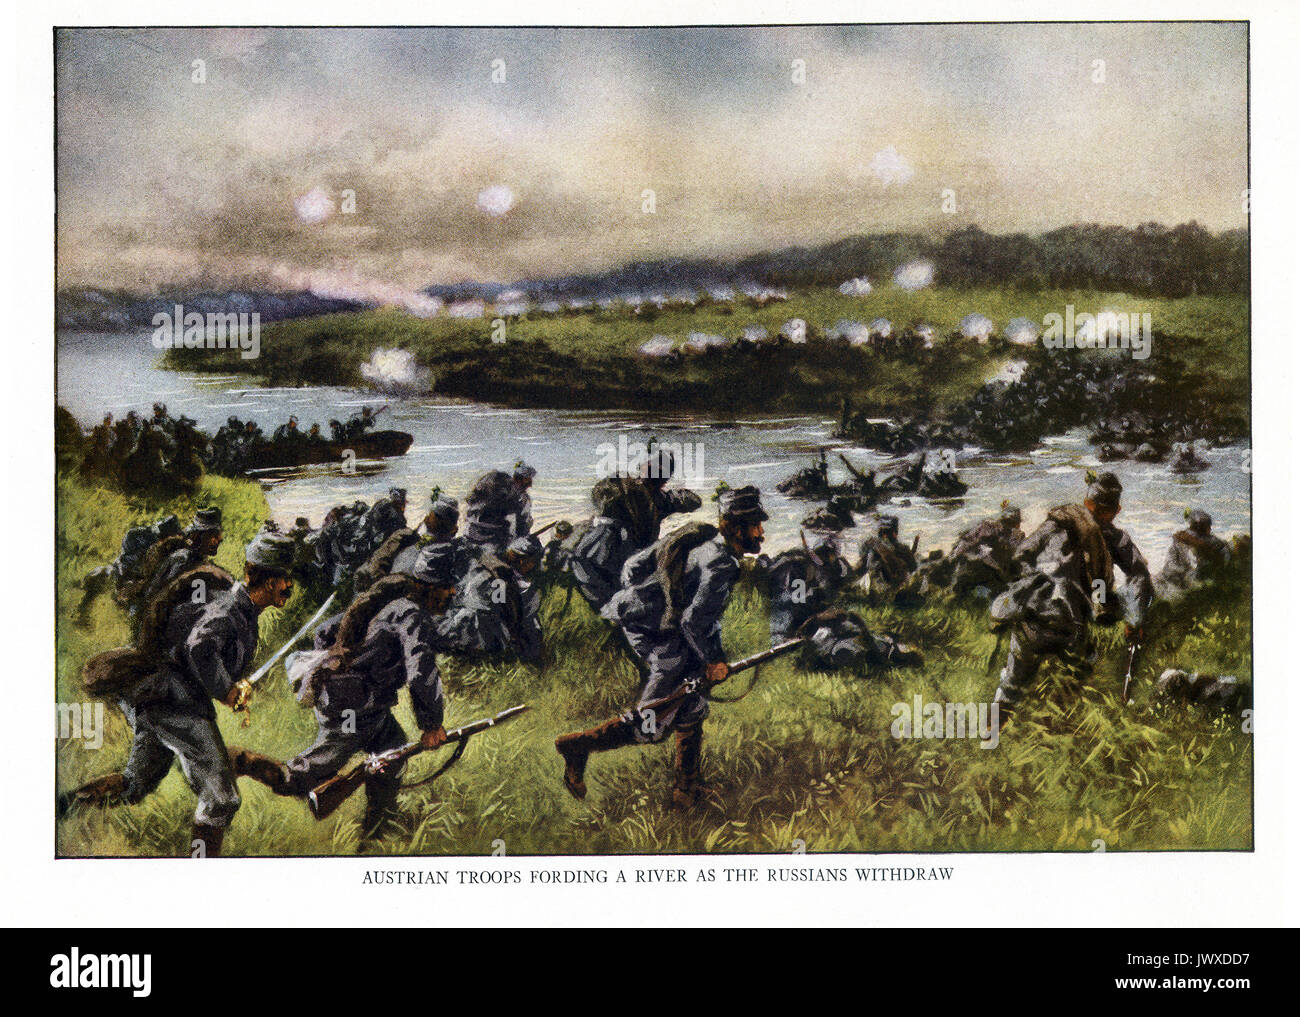 Diese Abbildung zeigt die Österreichische Truppen wattiefe ein Fluss Wie der Russischen zurückziehen - alle in den frühen Teil des Ersten Weltkriegs. Stockfoto